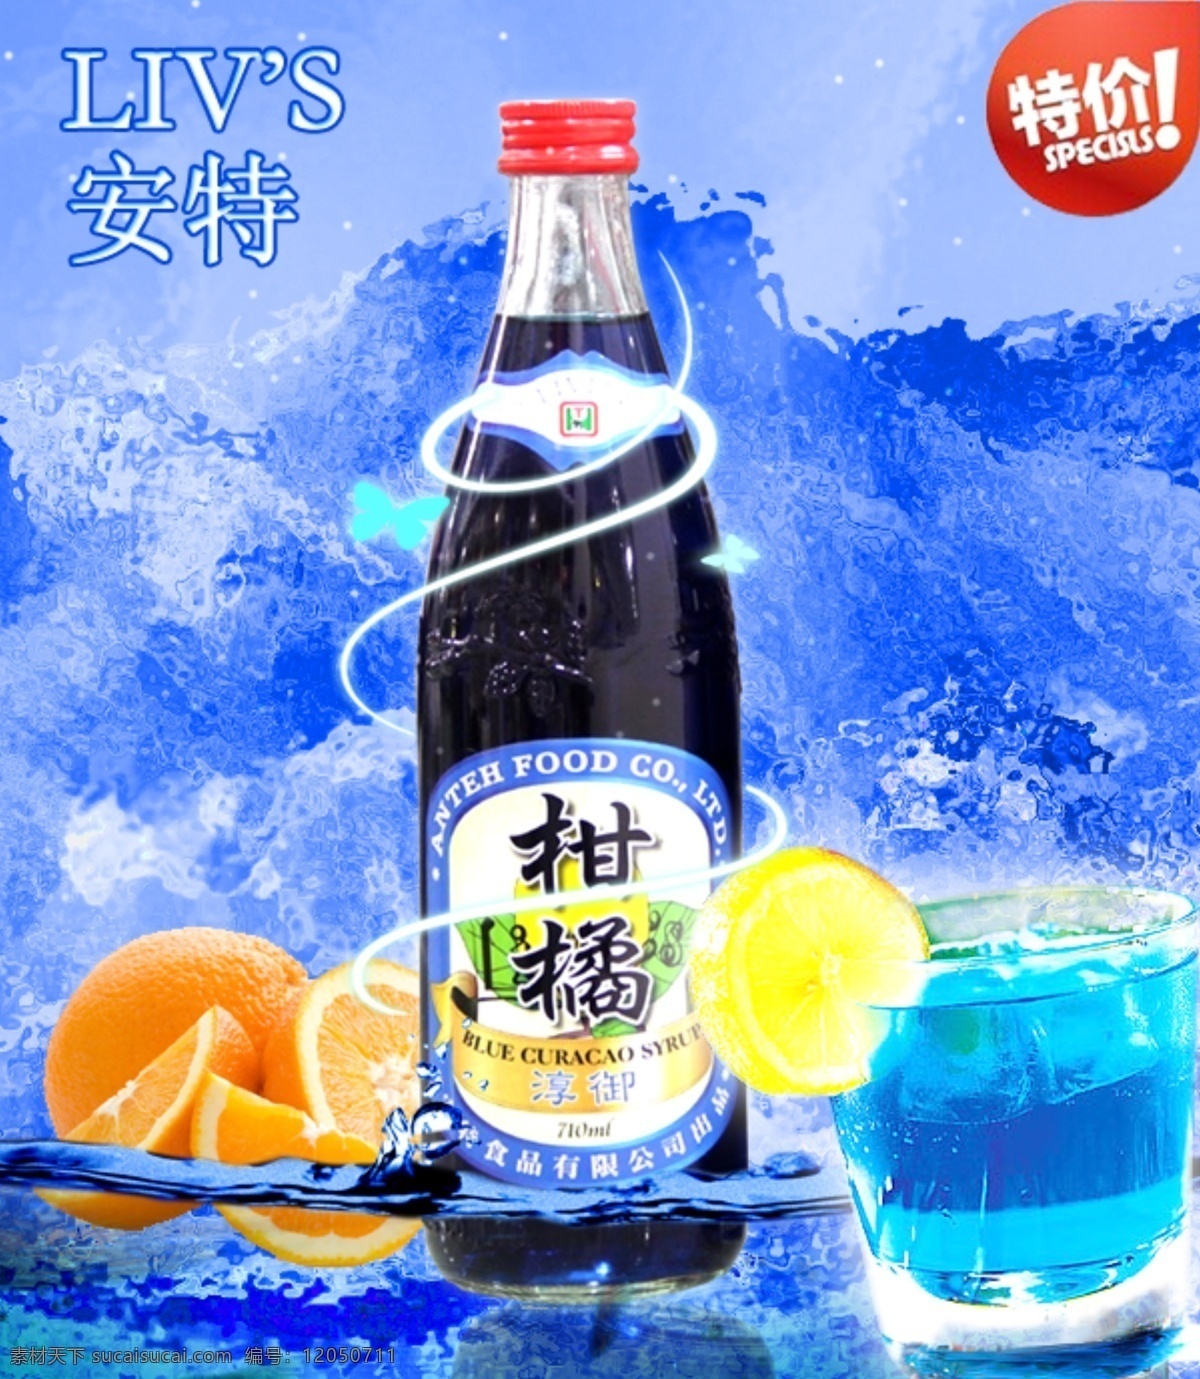 鲜 友 咖啡 专 供 台湾 安特 淳 御 柑橘 糖浆 蓝柑汁 鲜友 淳御 饮品 蓝色